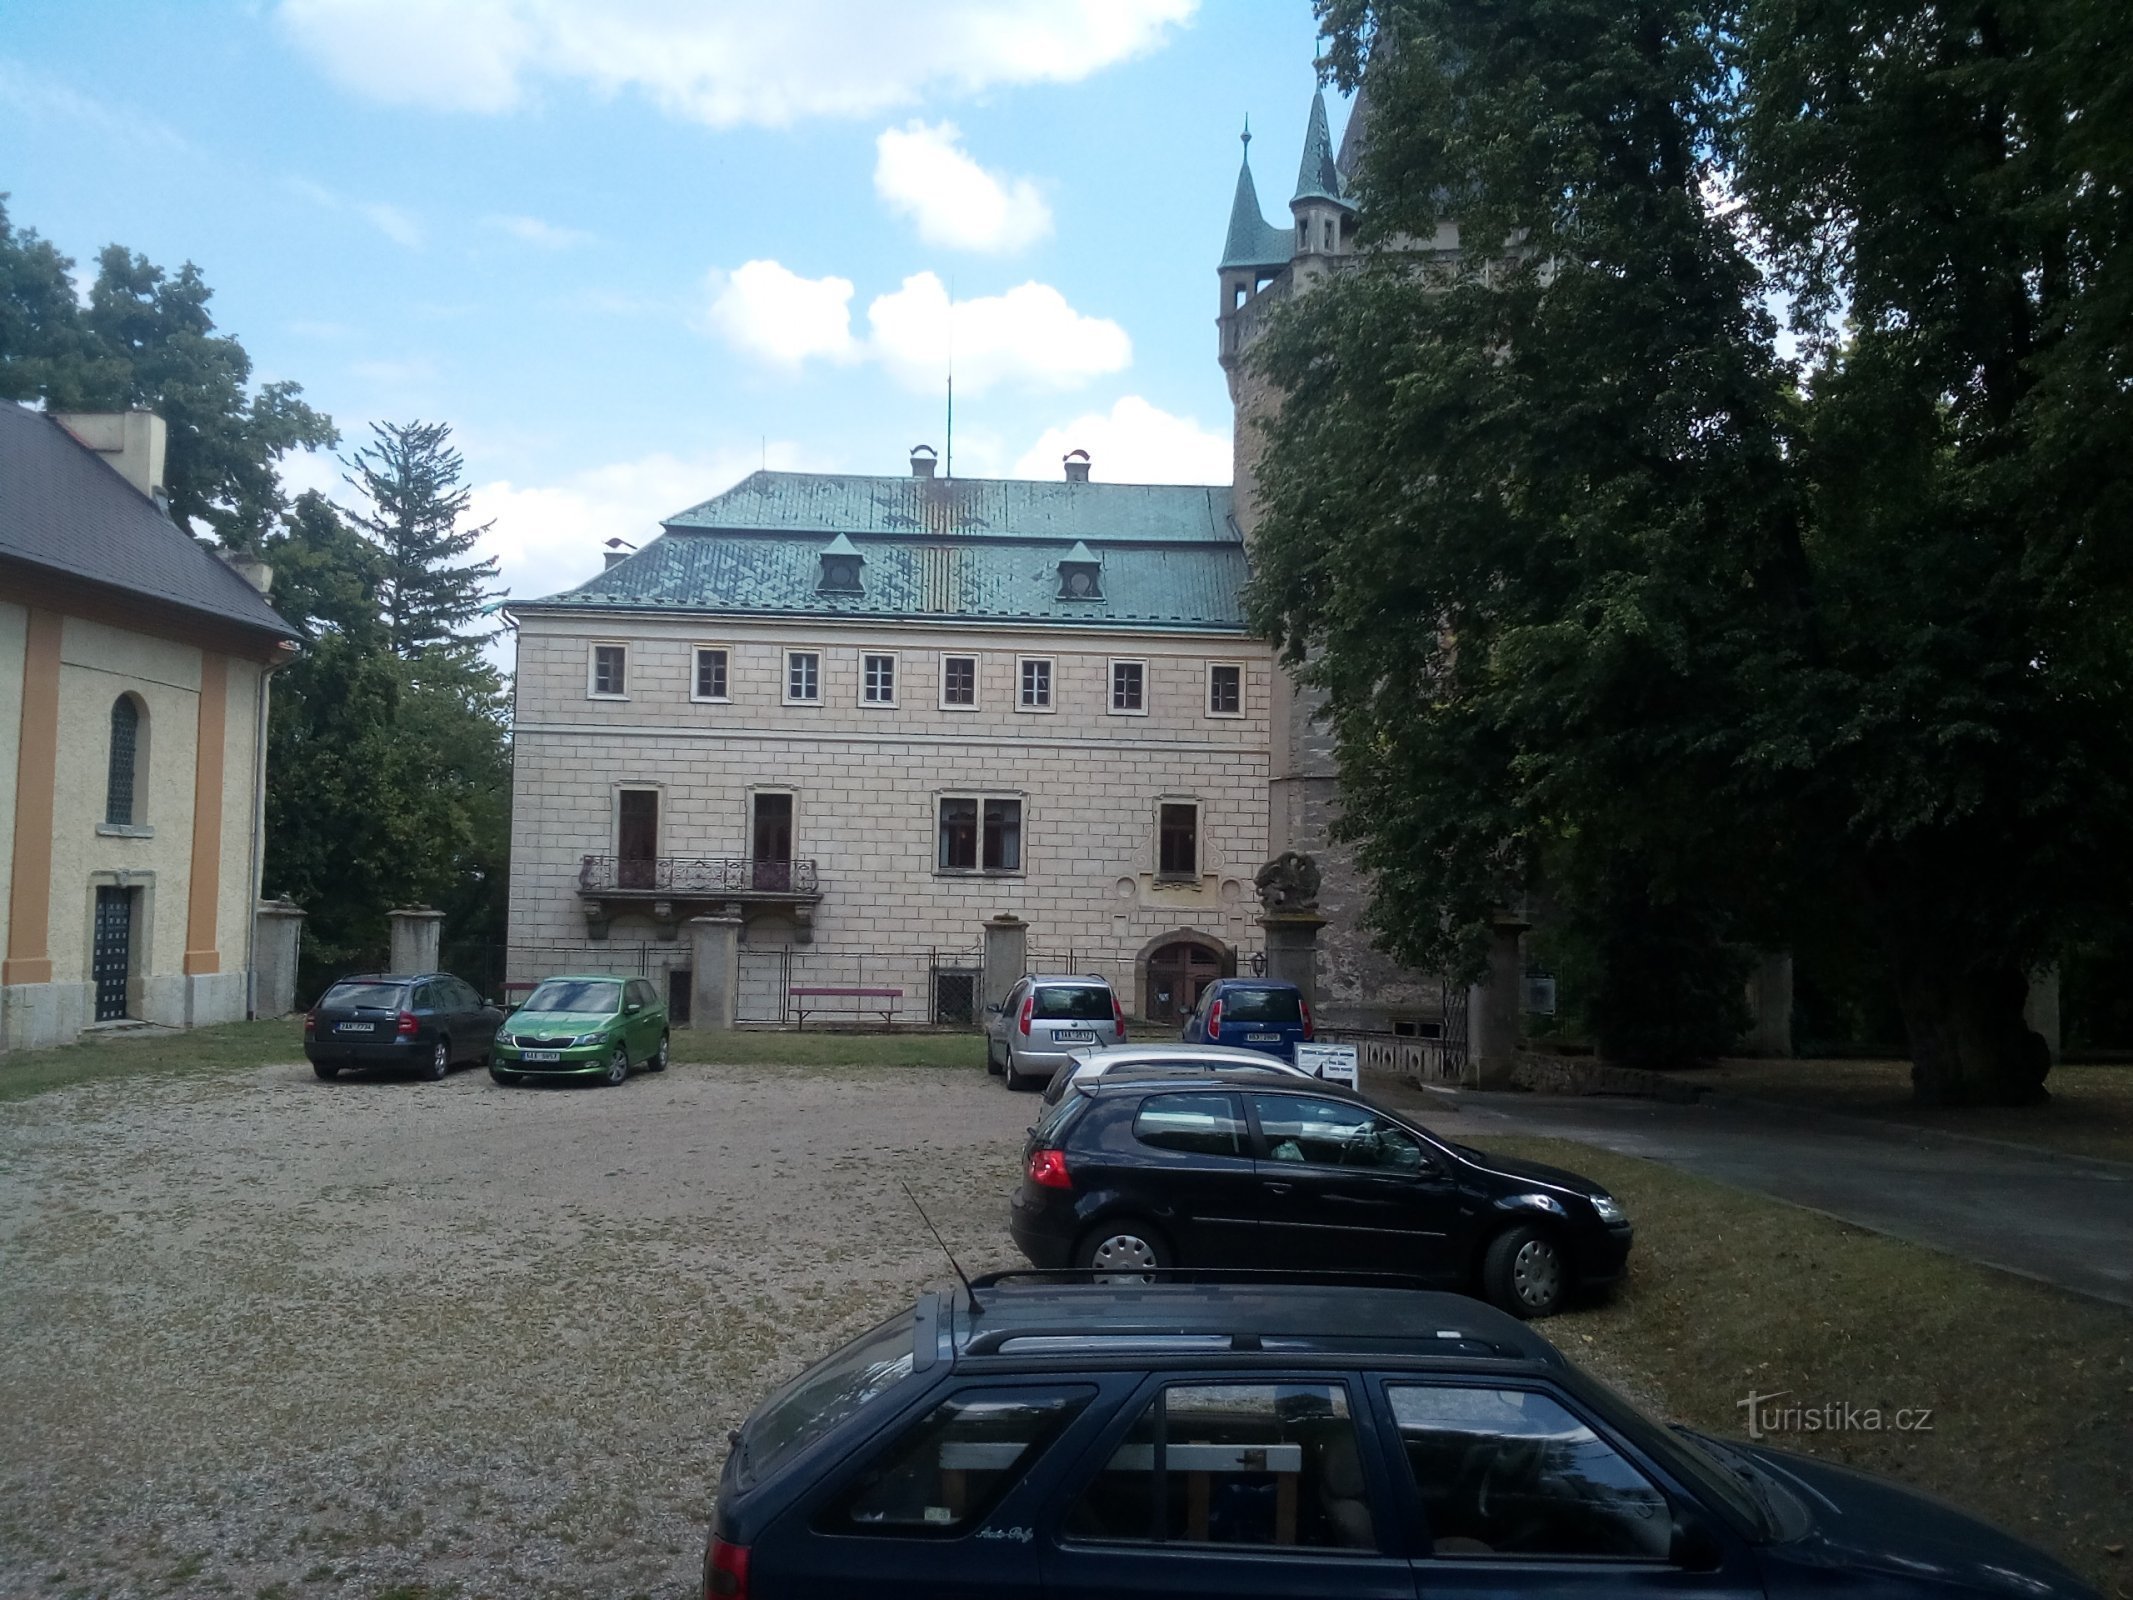 Stránov Castle